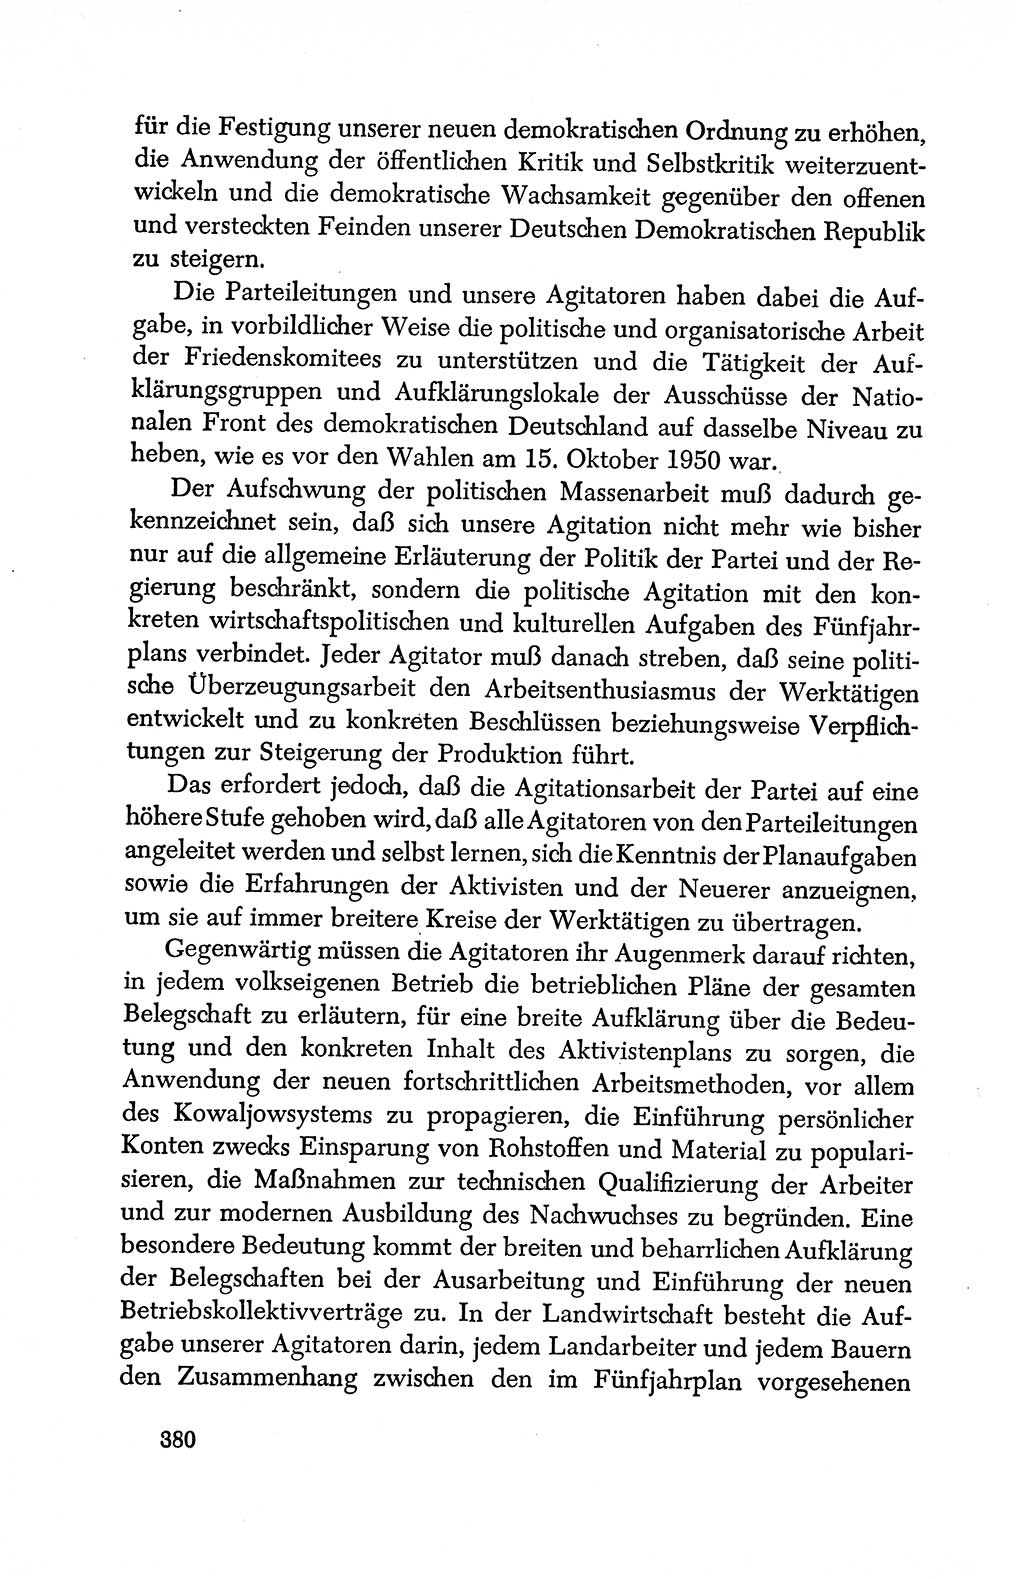 Dokumente der Sozialistischen Einheitspartei Deutschlands (SED) [Deutsche Demokratische Republik (DDR)] 1950-1952, Seite 380 (Dok. SED DDR 1950-1952, S. 380)